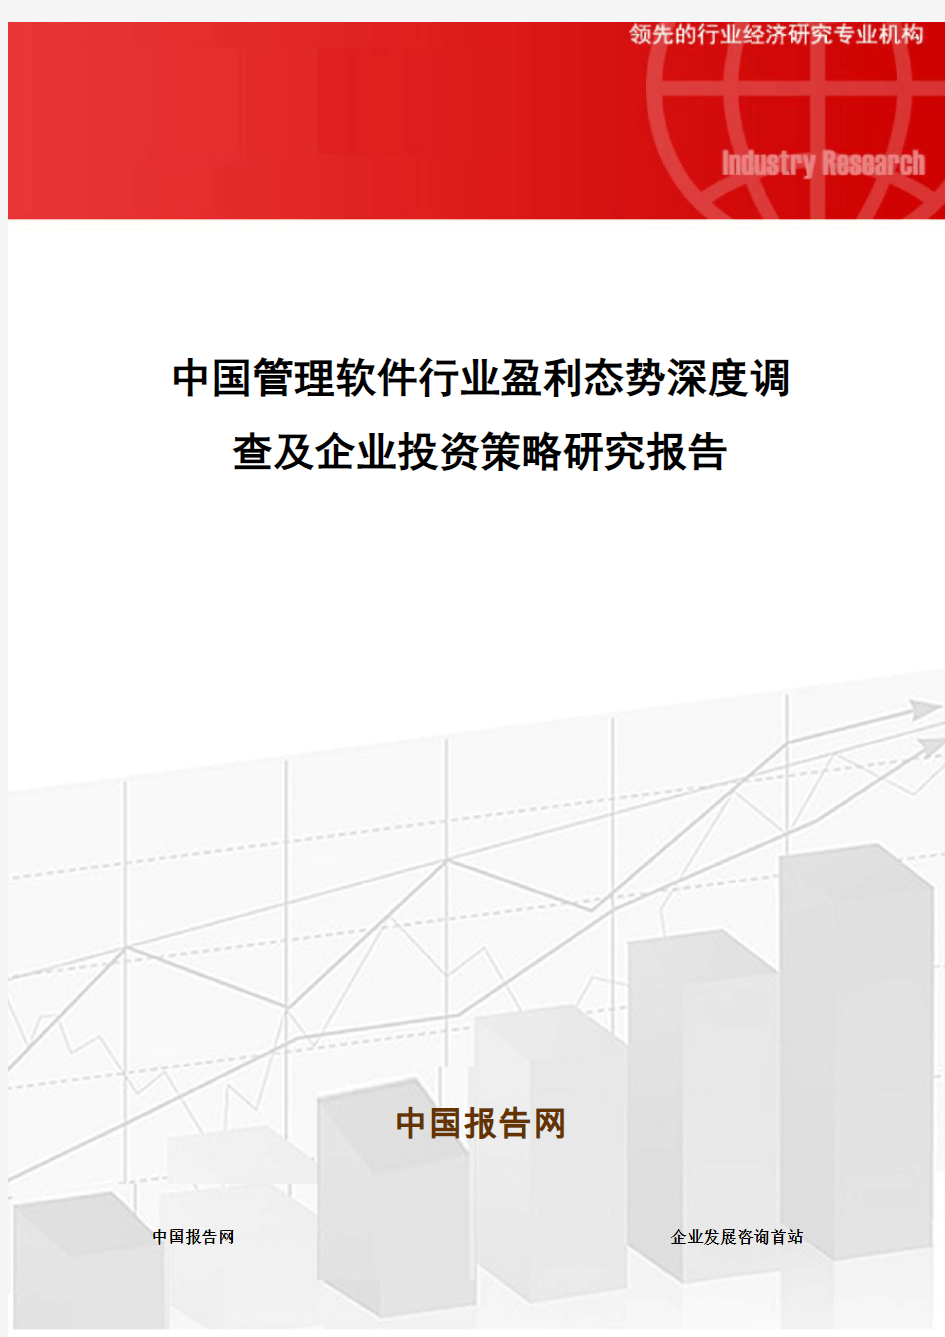 中国管理软件行业盈利态势深度调查及企业投资策略研究报告